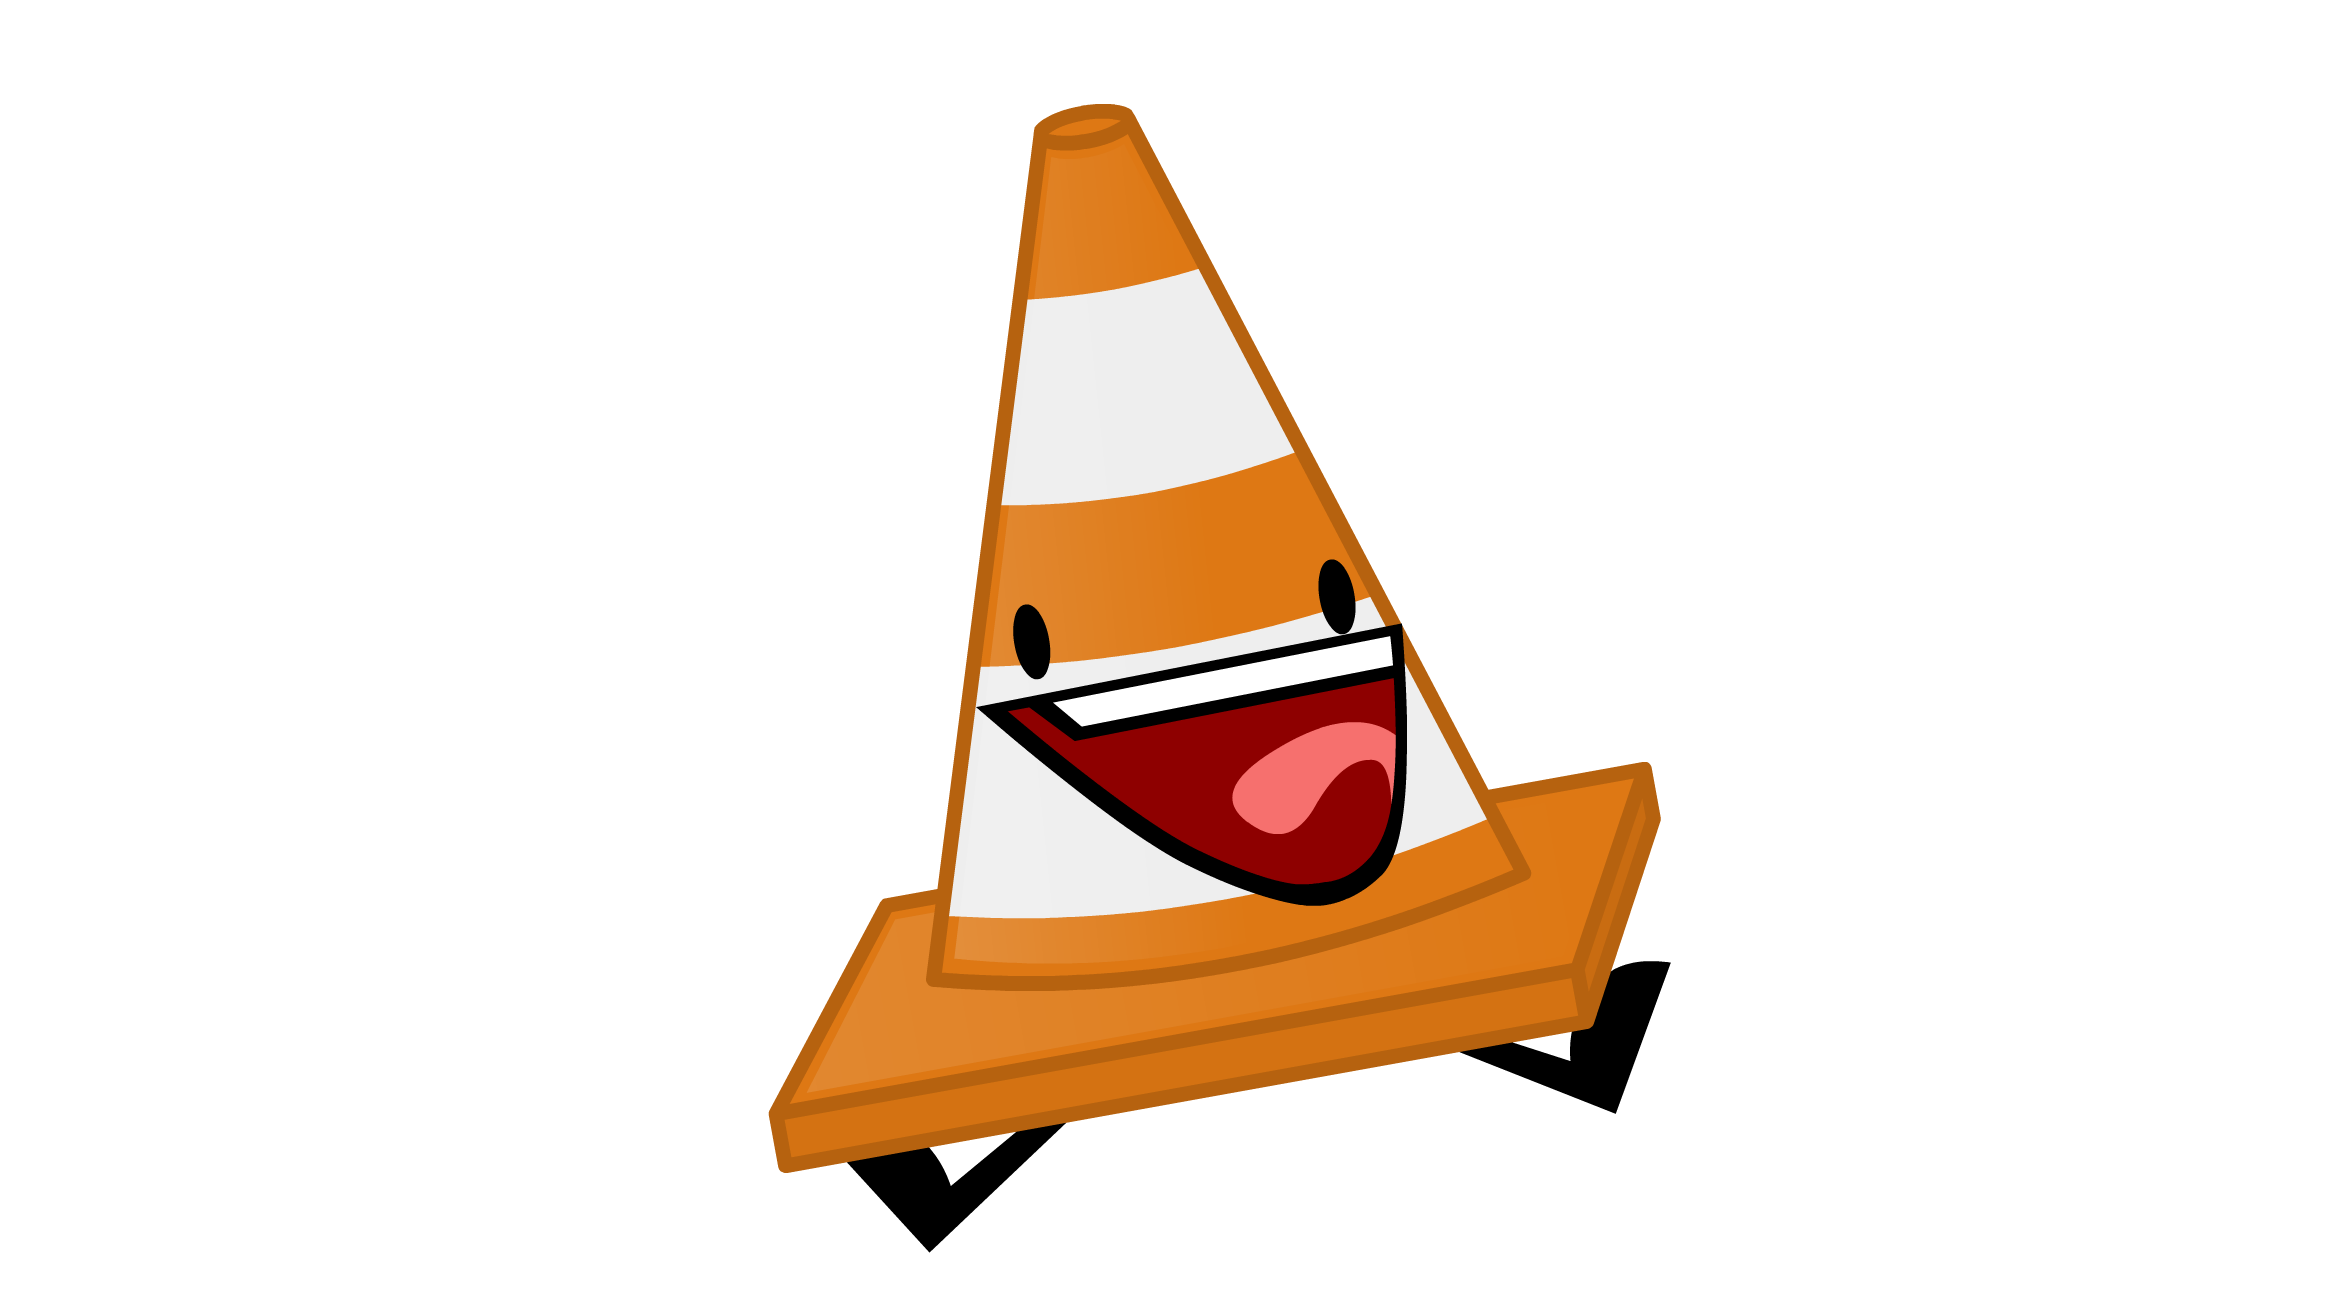 cone clipart cone object